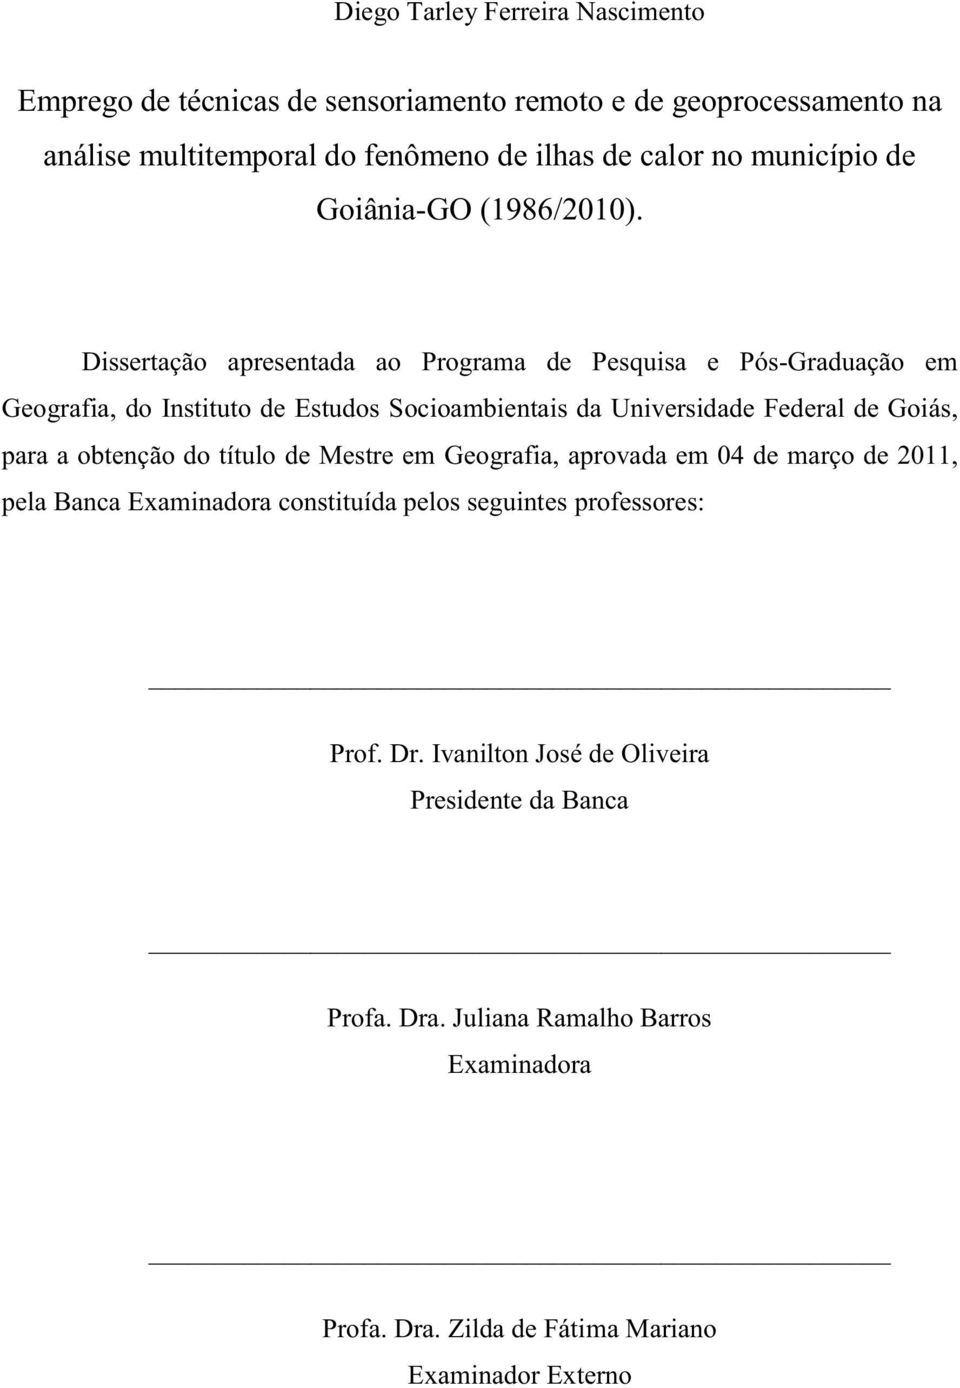 Dissertação apresentada ao Programa de Pesquisa e Pós-Graduação em Geografia, do Instituto de Estudos Socioambientais da Universidade Federal de Goiás, para a